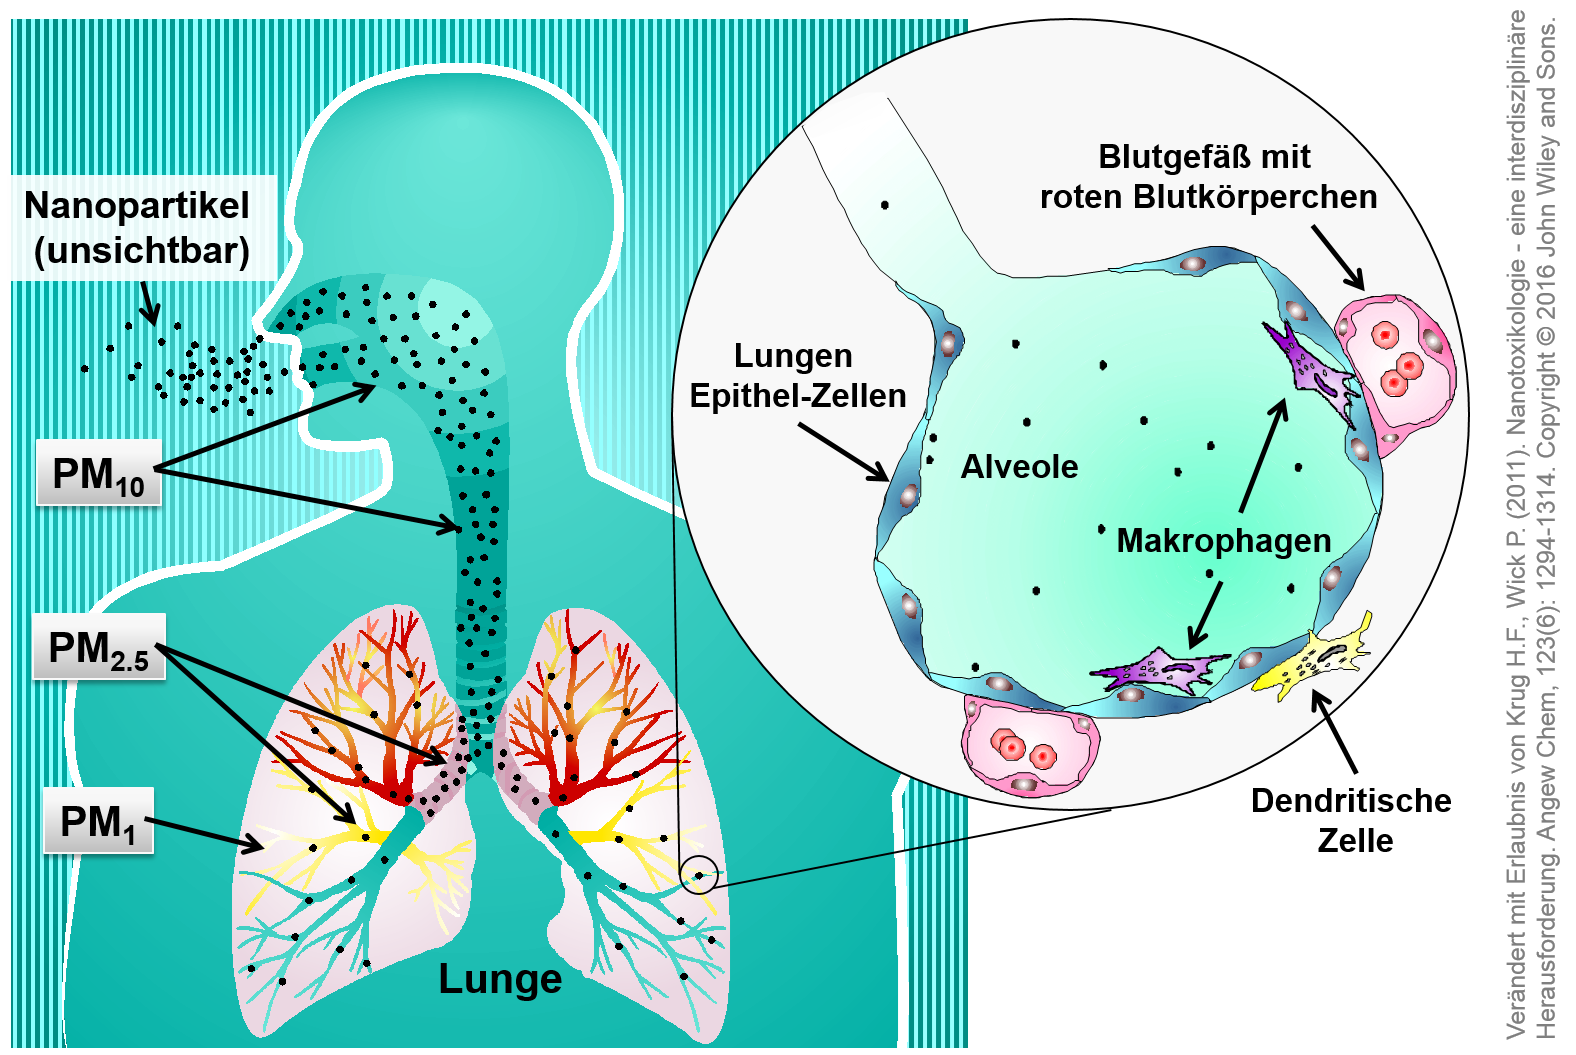 Mögliche Transportwege von Partikeln unterschiedlicher Größe in der Lunge. 